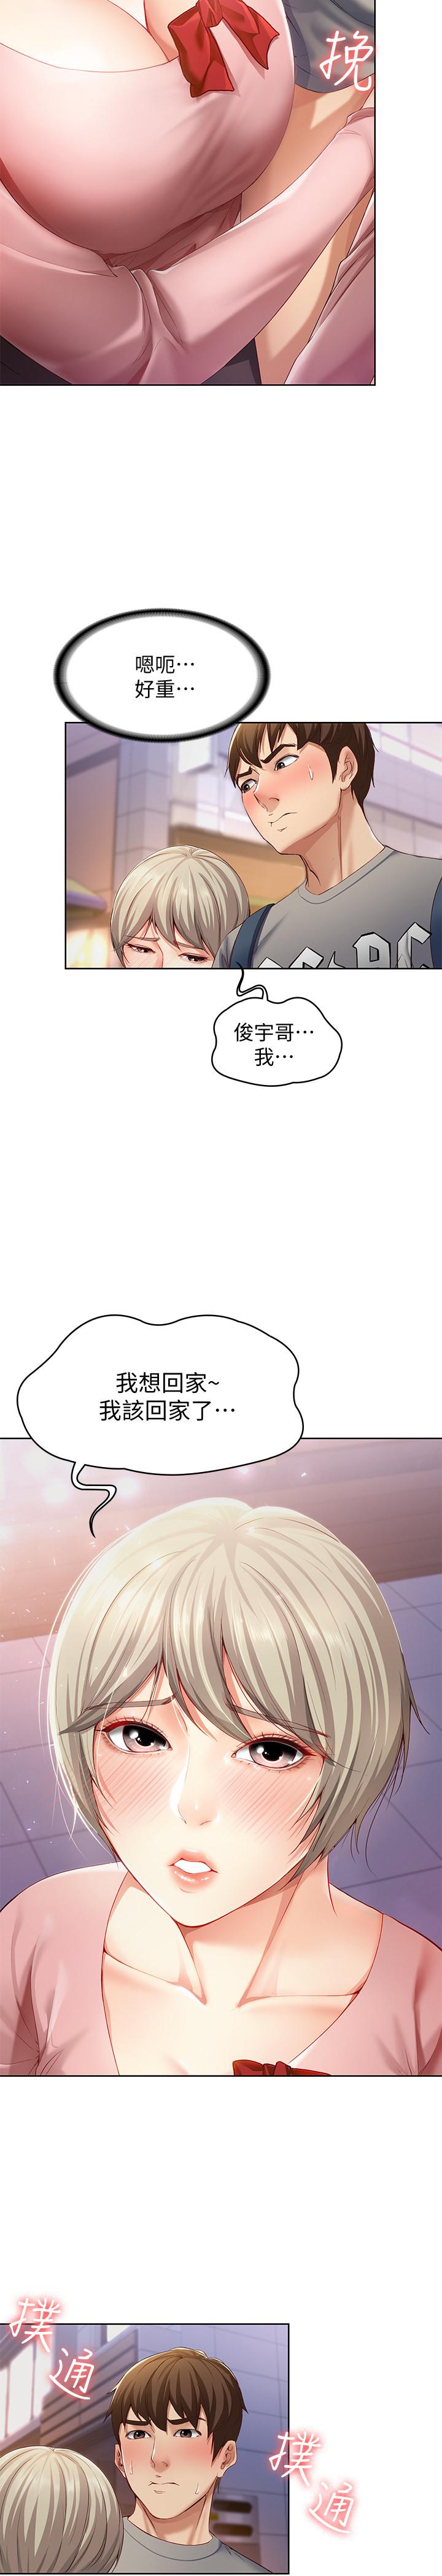 韩国污漫画 寄宿日記 第1话-阿姨半夜偷看的影片 53